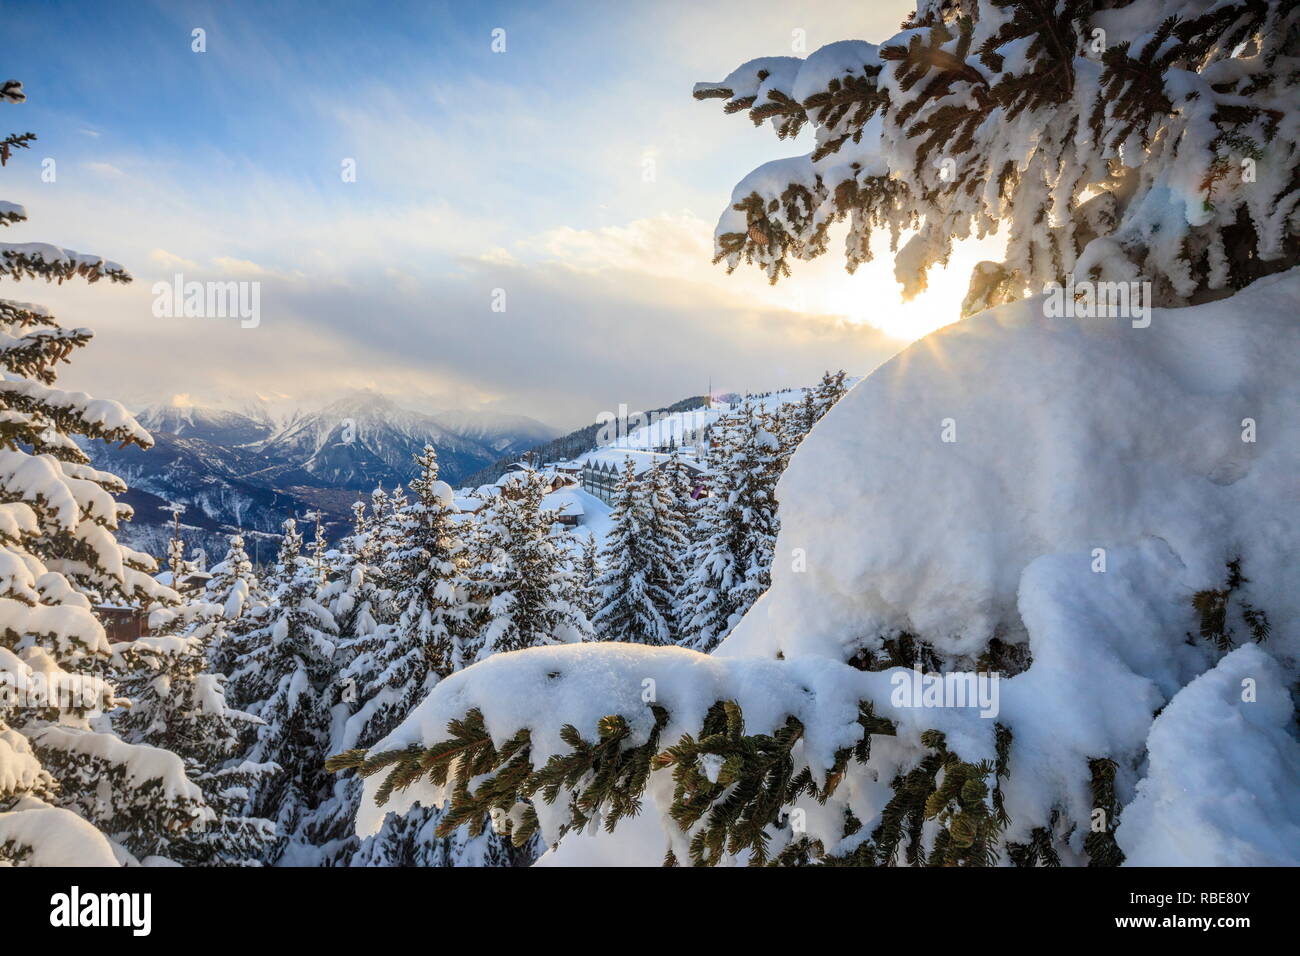 Sonnenstrahl in den verschneiten Wäldern umrahmt von Winter Sonnenuntergang Bettmeralp Bezirk Raron Kanton Wallis Schweiz Europa Stockfoto